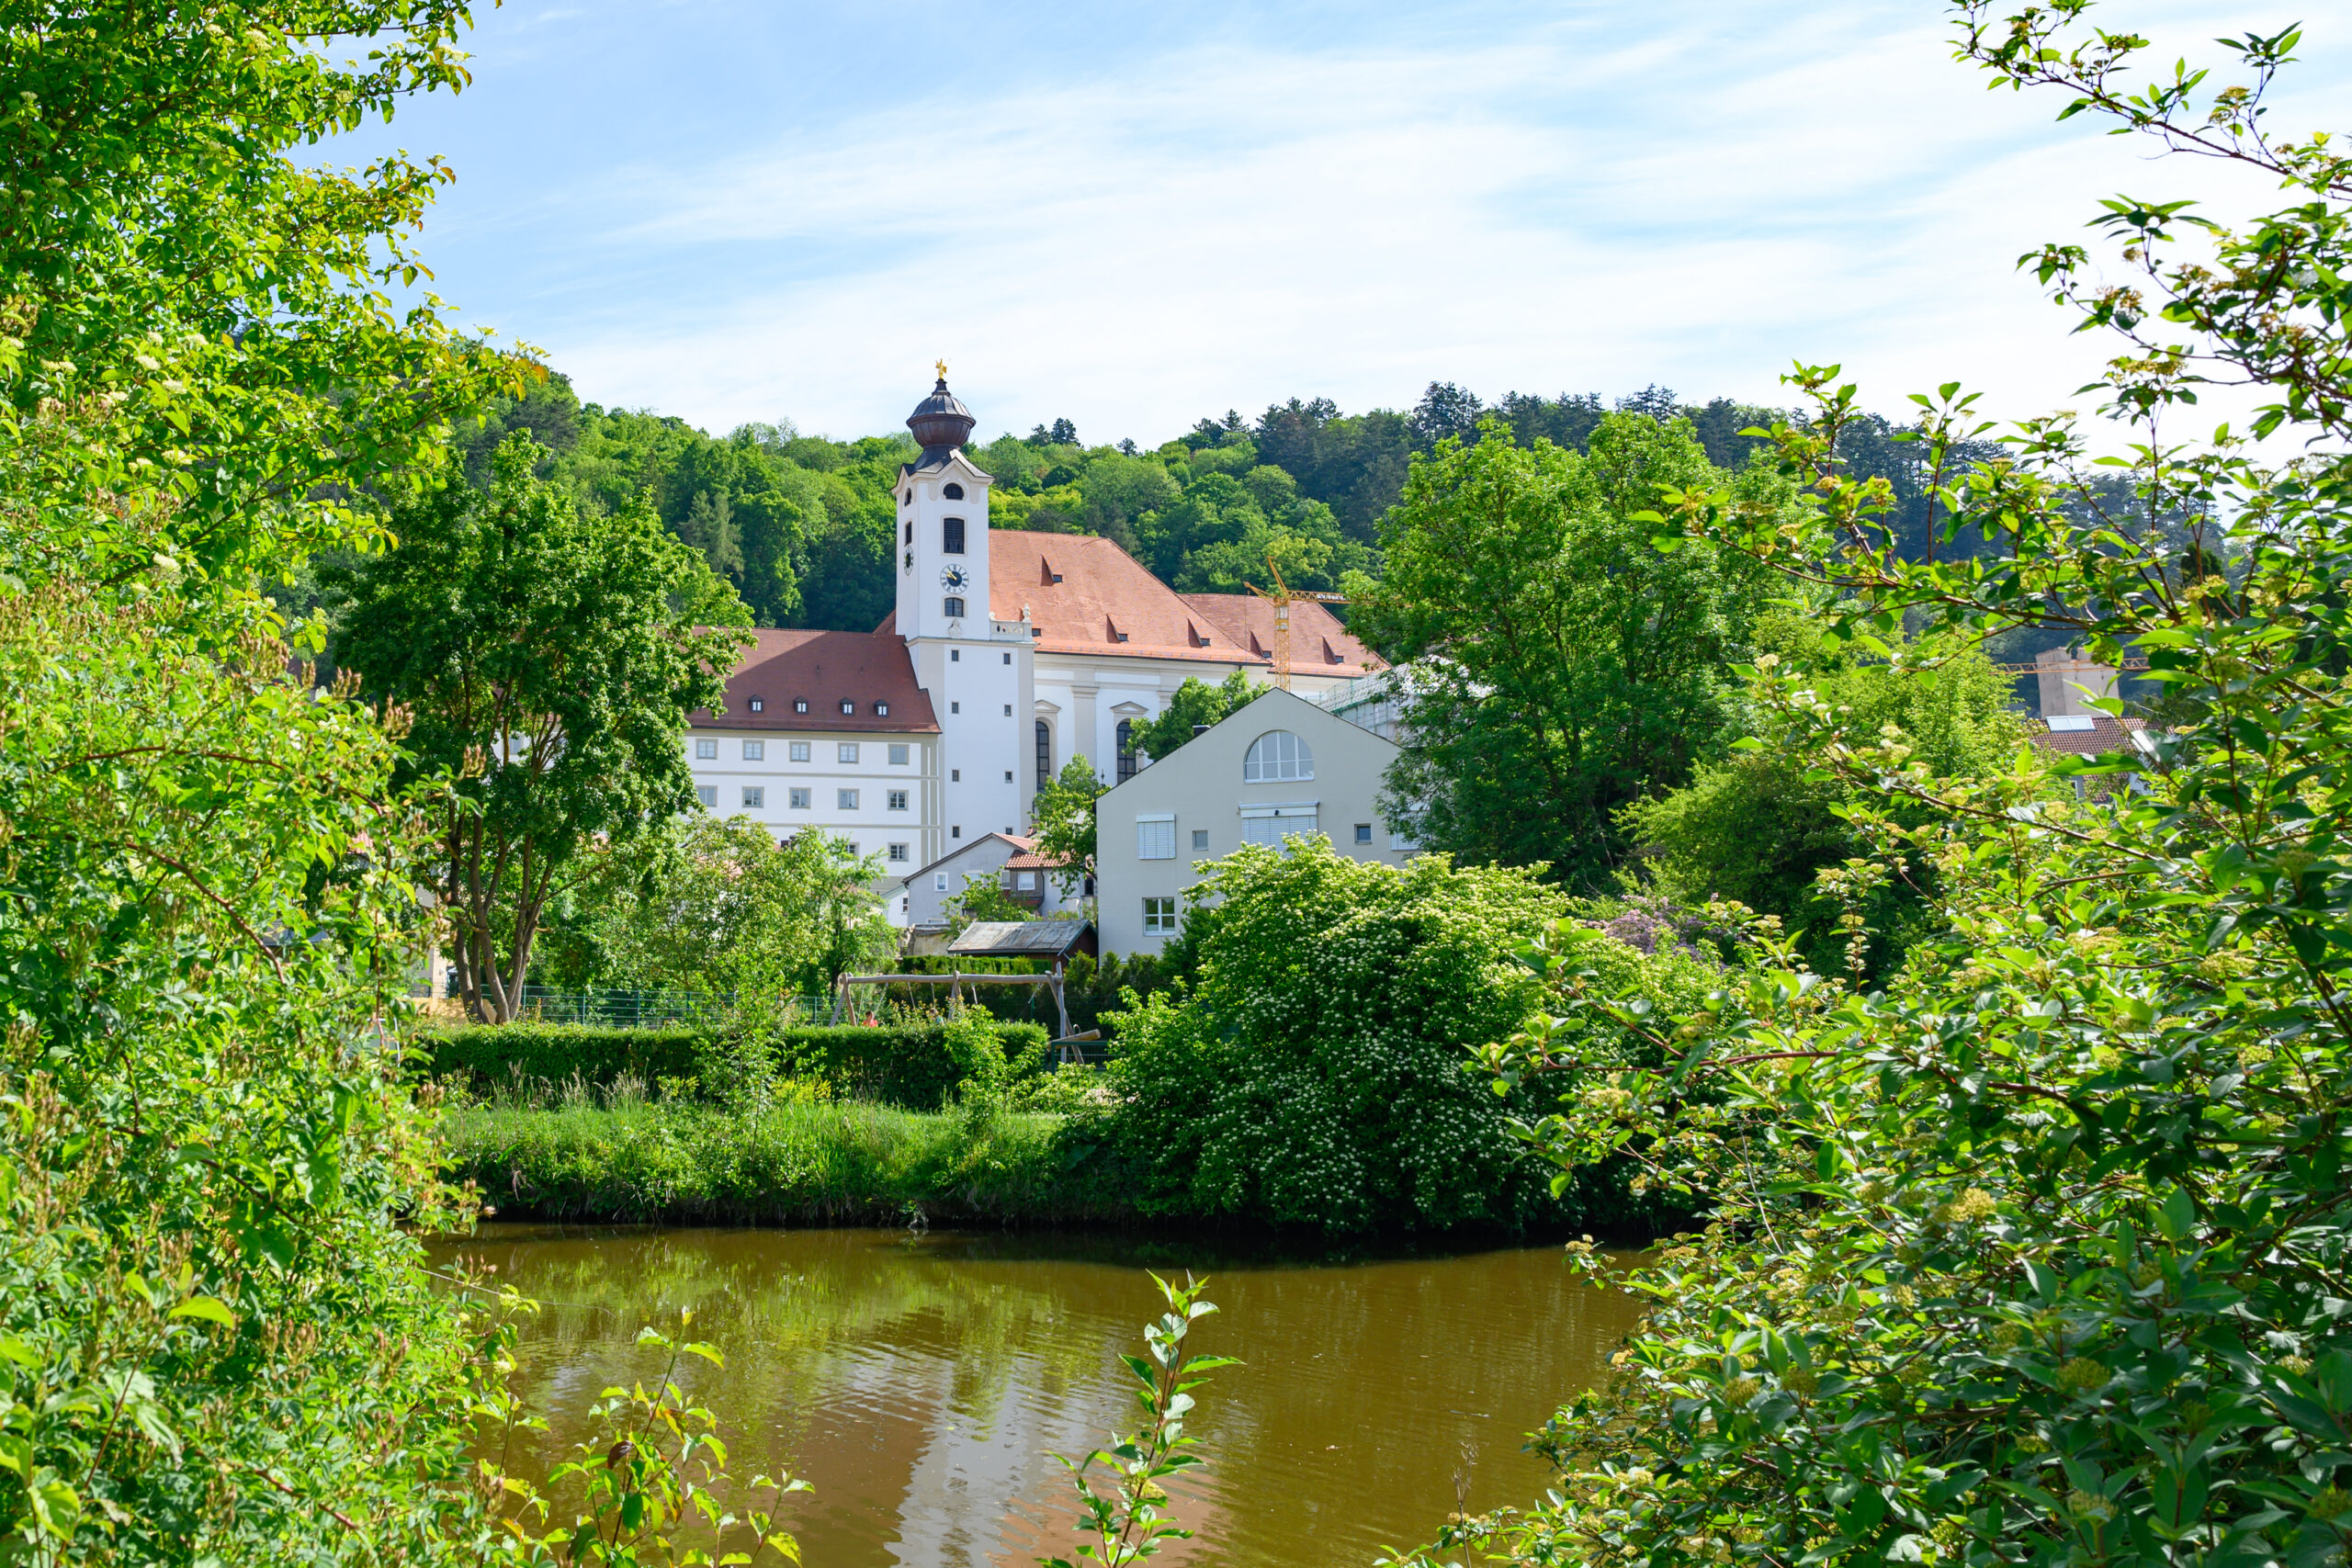 Kloster St. Walburg in Eichstätt in dem Benedicta Äbtissin war